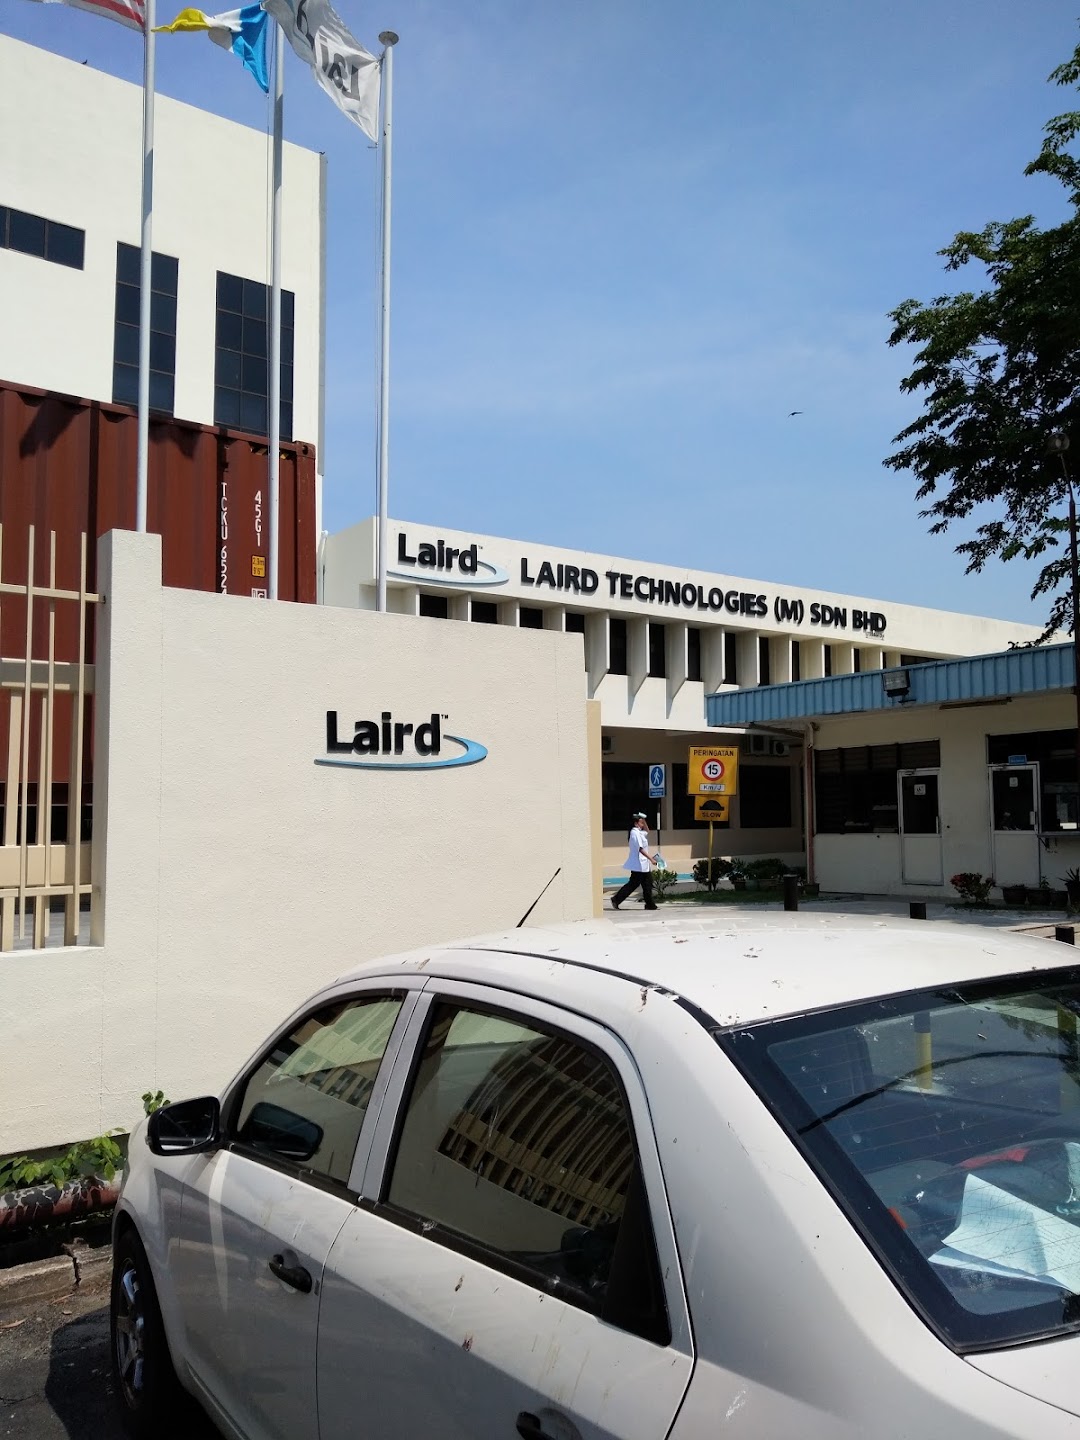 Laird Technologies (m) Sdn. Bhd.